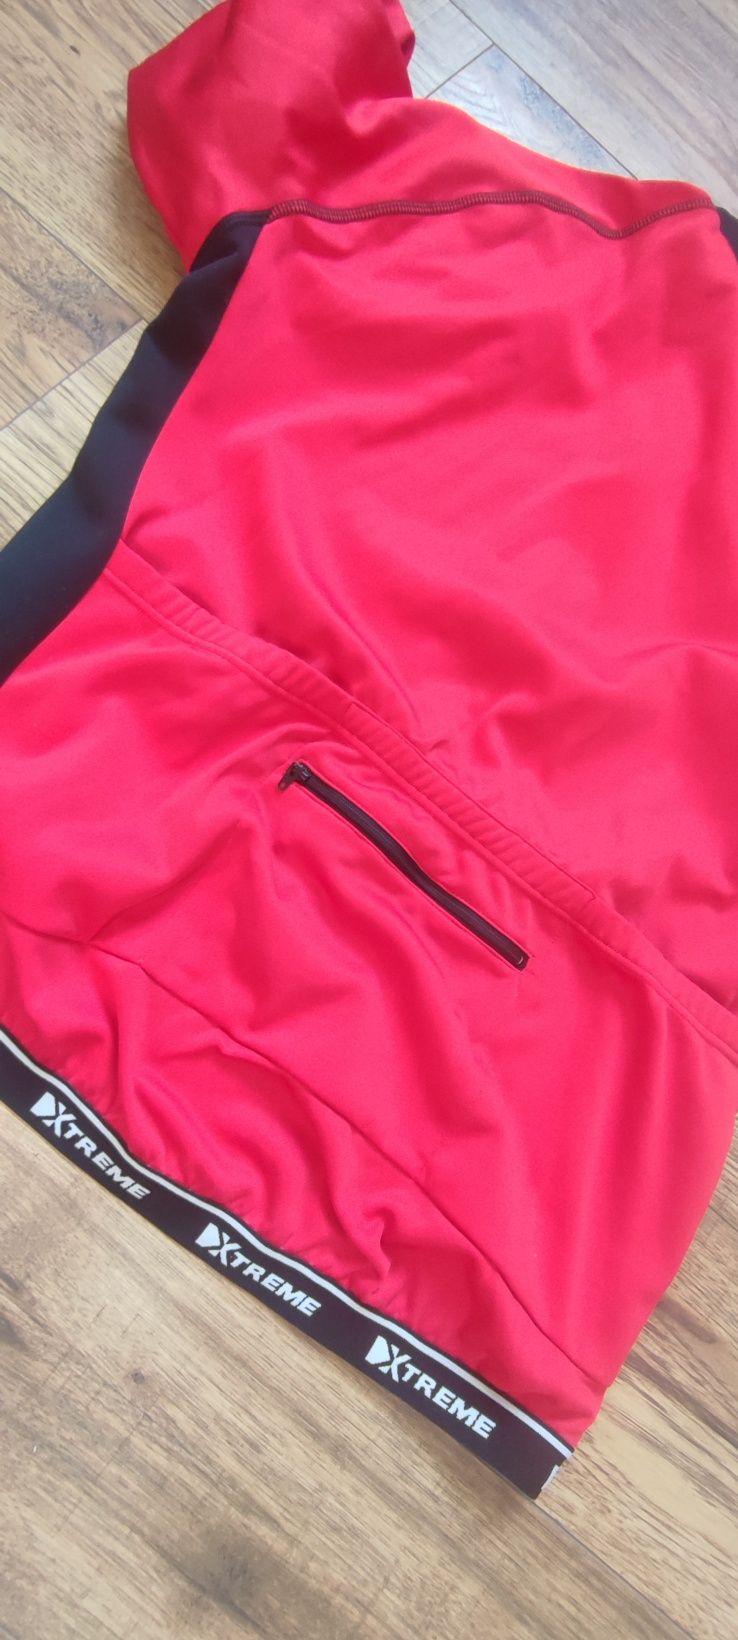 Bluza kolarska rowerowa damska XL Extreme czerwona sportowa